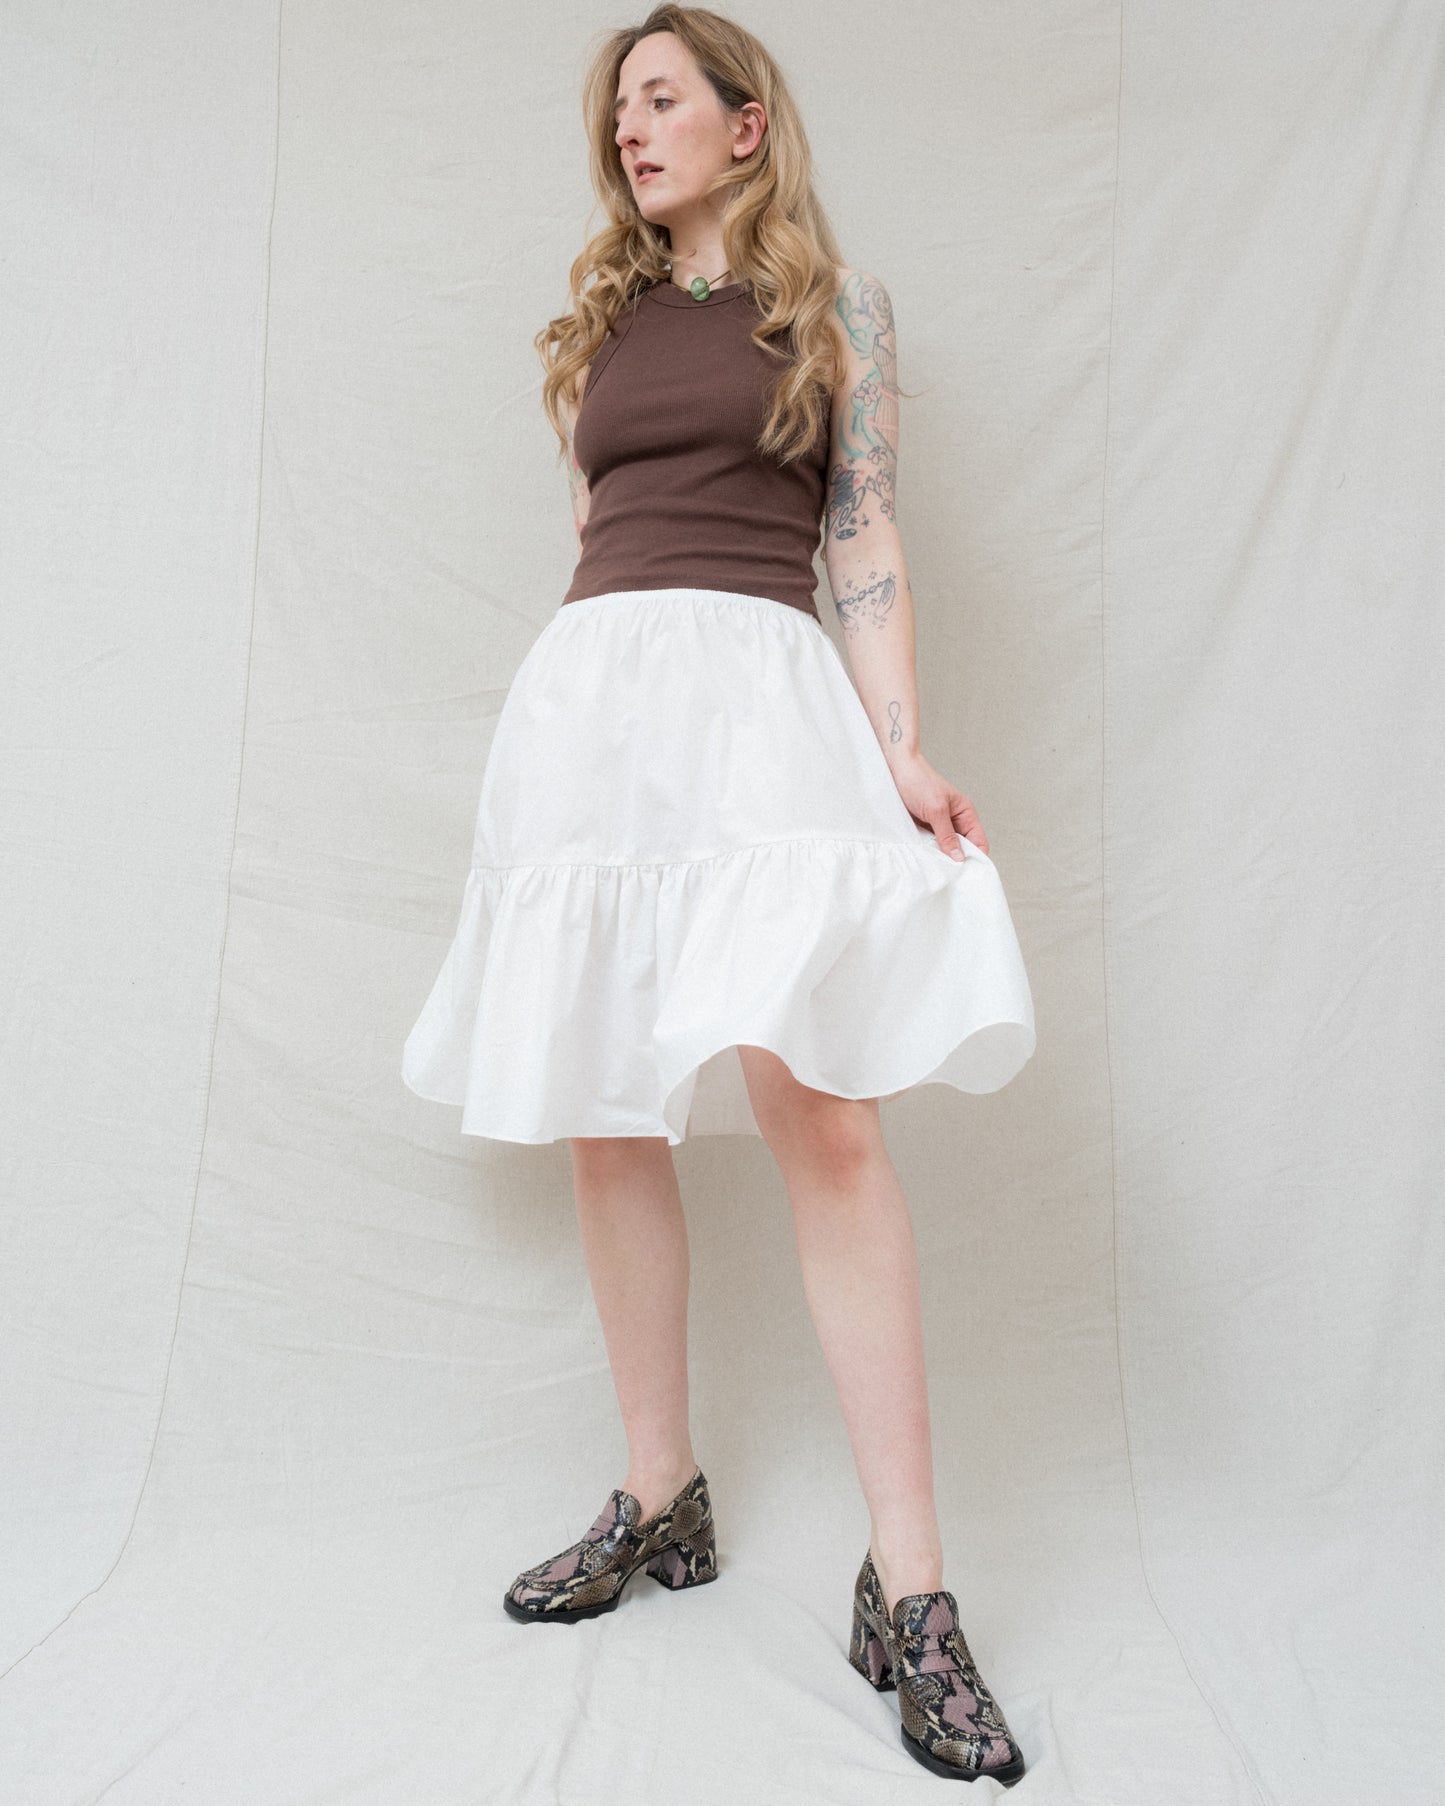 Matilda Skirt in Alabaster